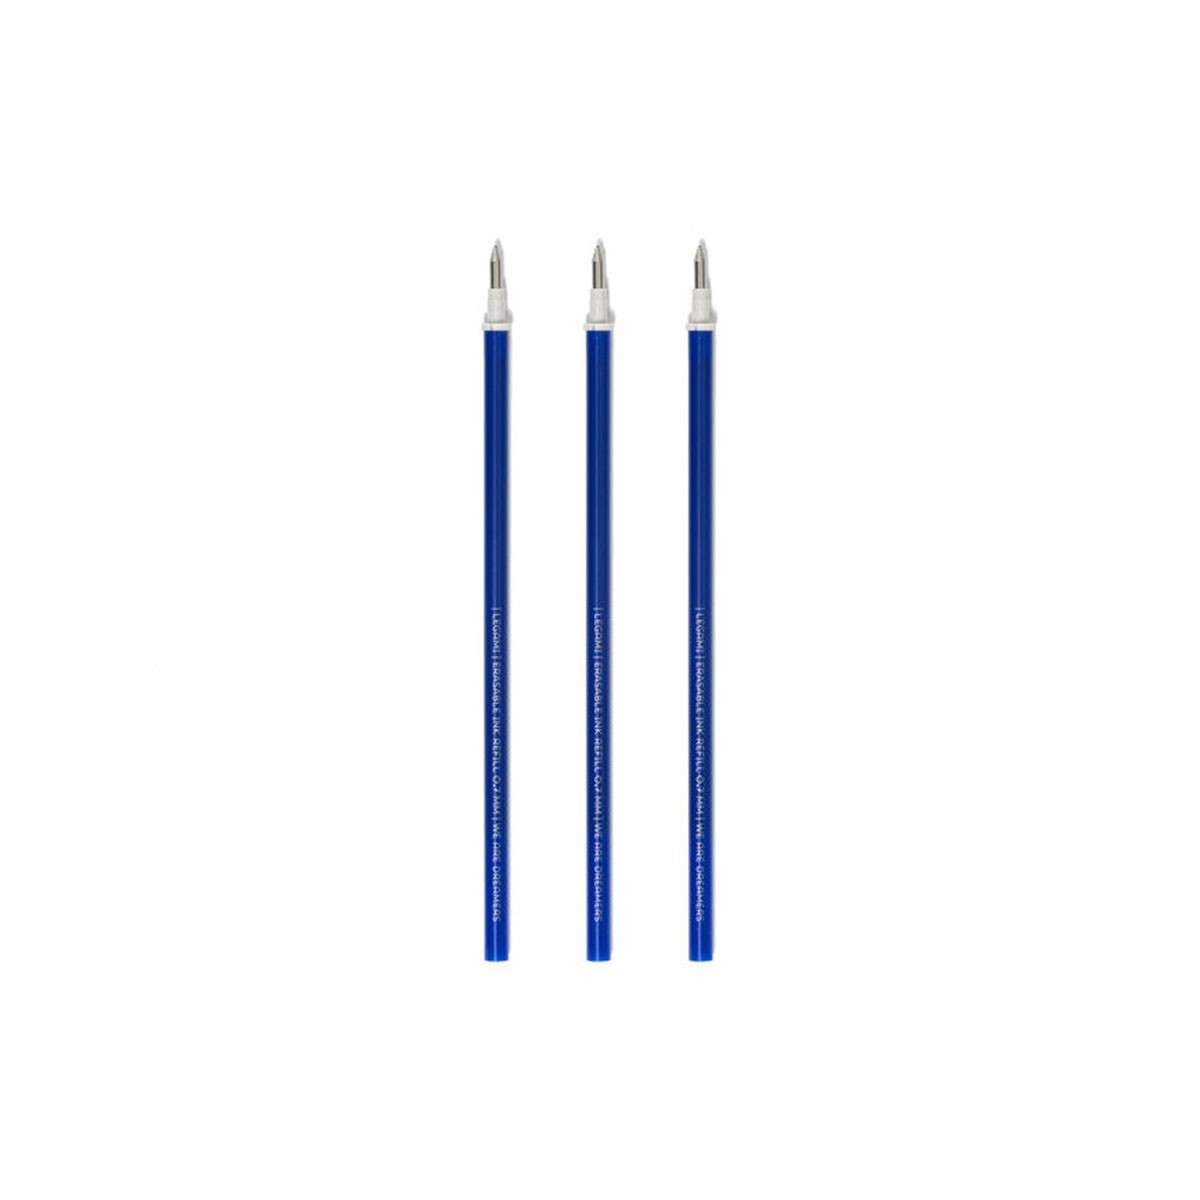 Legami Σετ 3 Ανταλλακτικά για στυλό που σβήνει - Μπλε